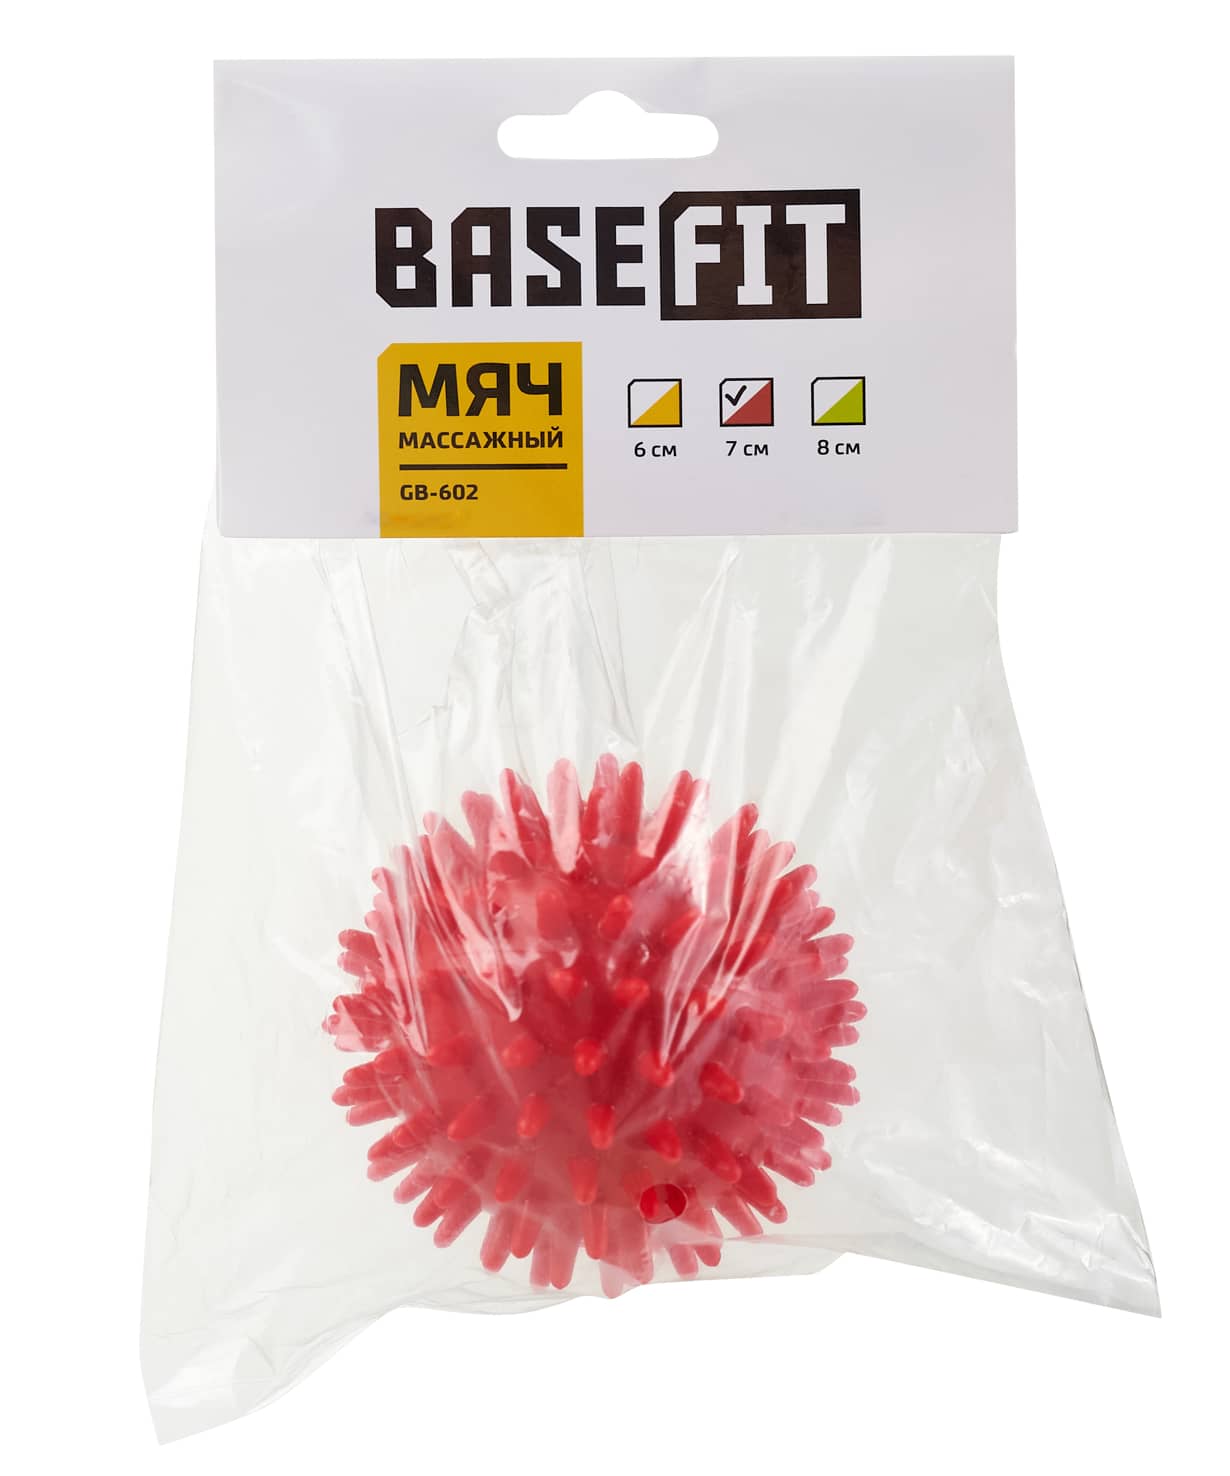 Мяч массажный BaseFit GB-602 7 см, малиновый 1230_1476